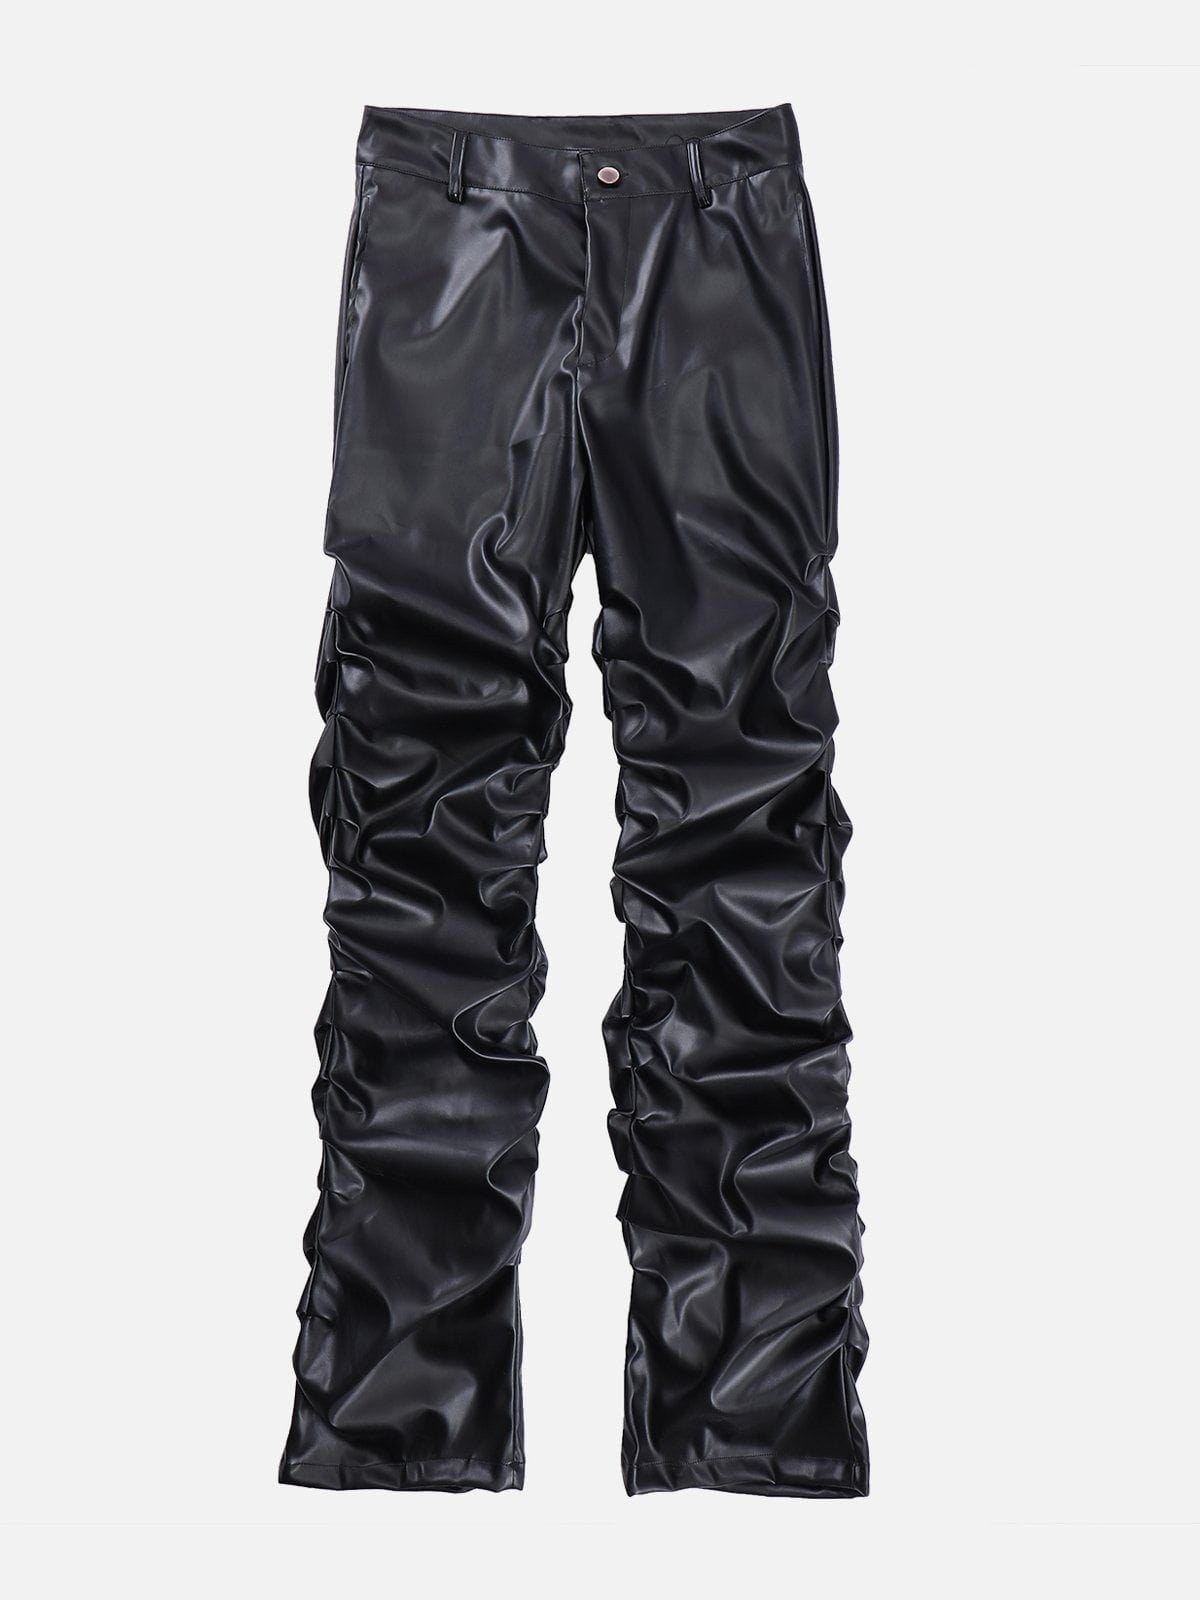 Eprezzy® - Solid Crinkled PU Pants Streetwear Fashion - eprezzy.com